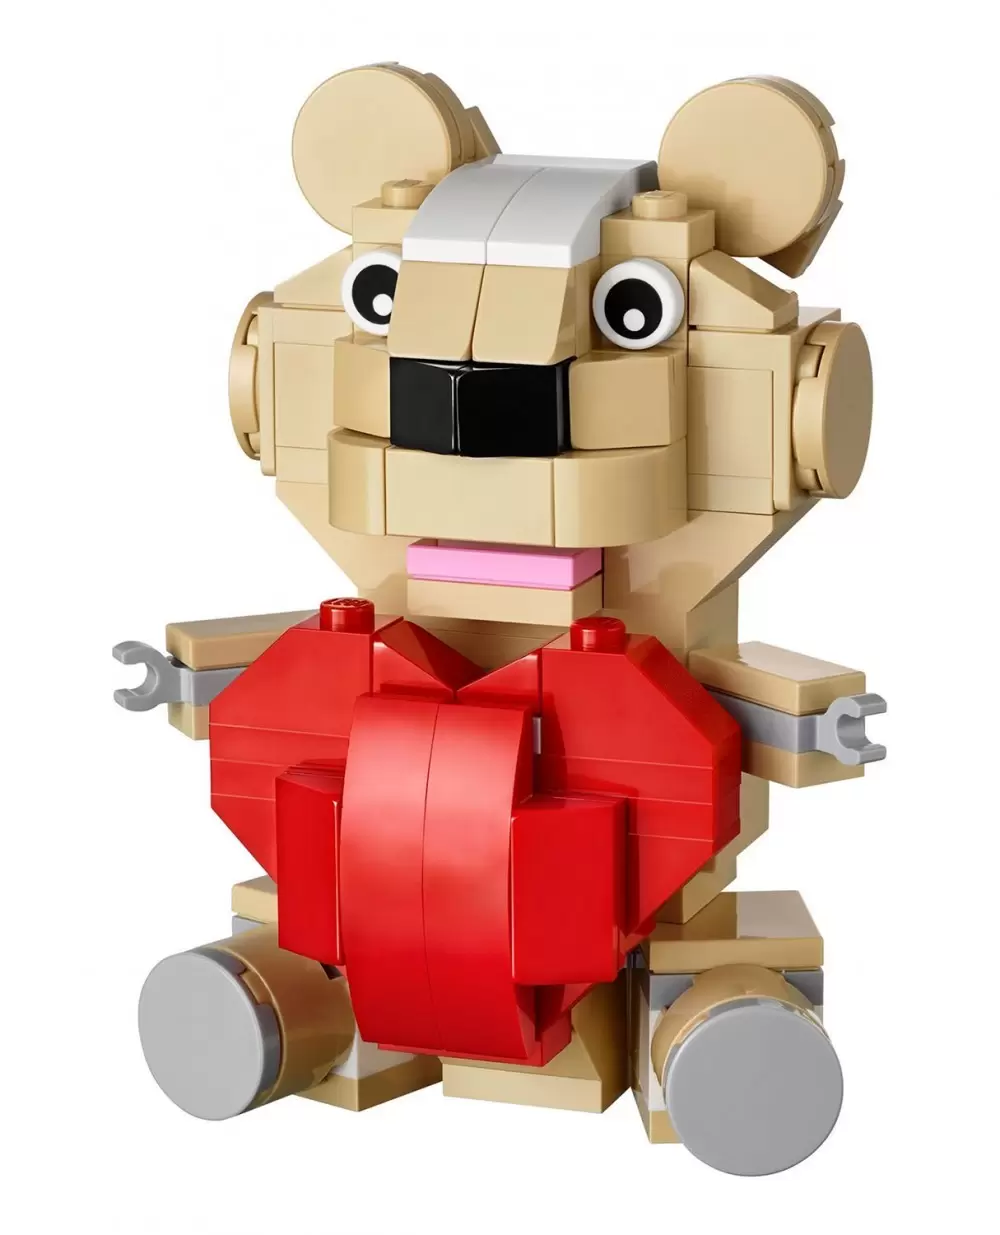 LEGO Saisonnier 40051 pas cher, Le coeur de la Saint-Valentin